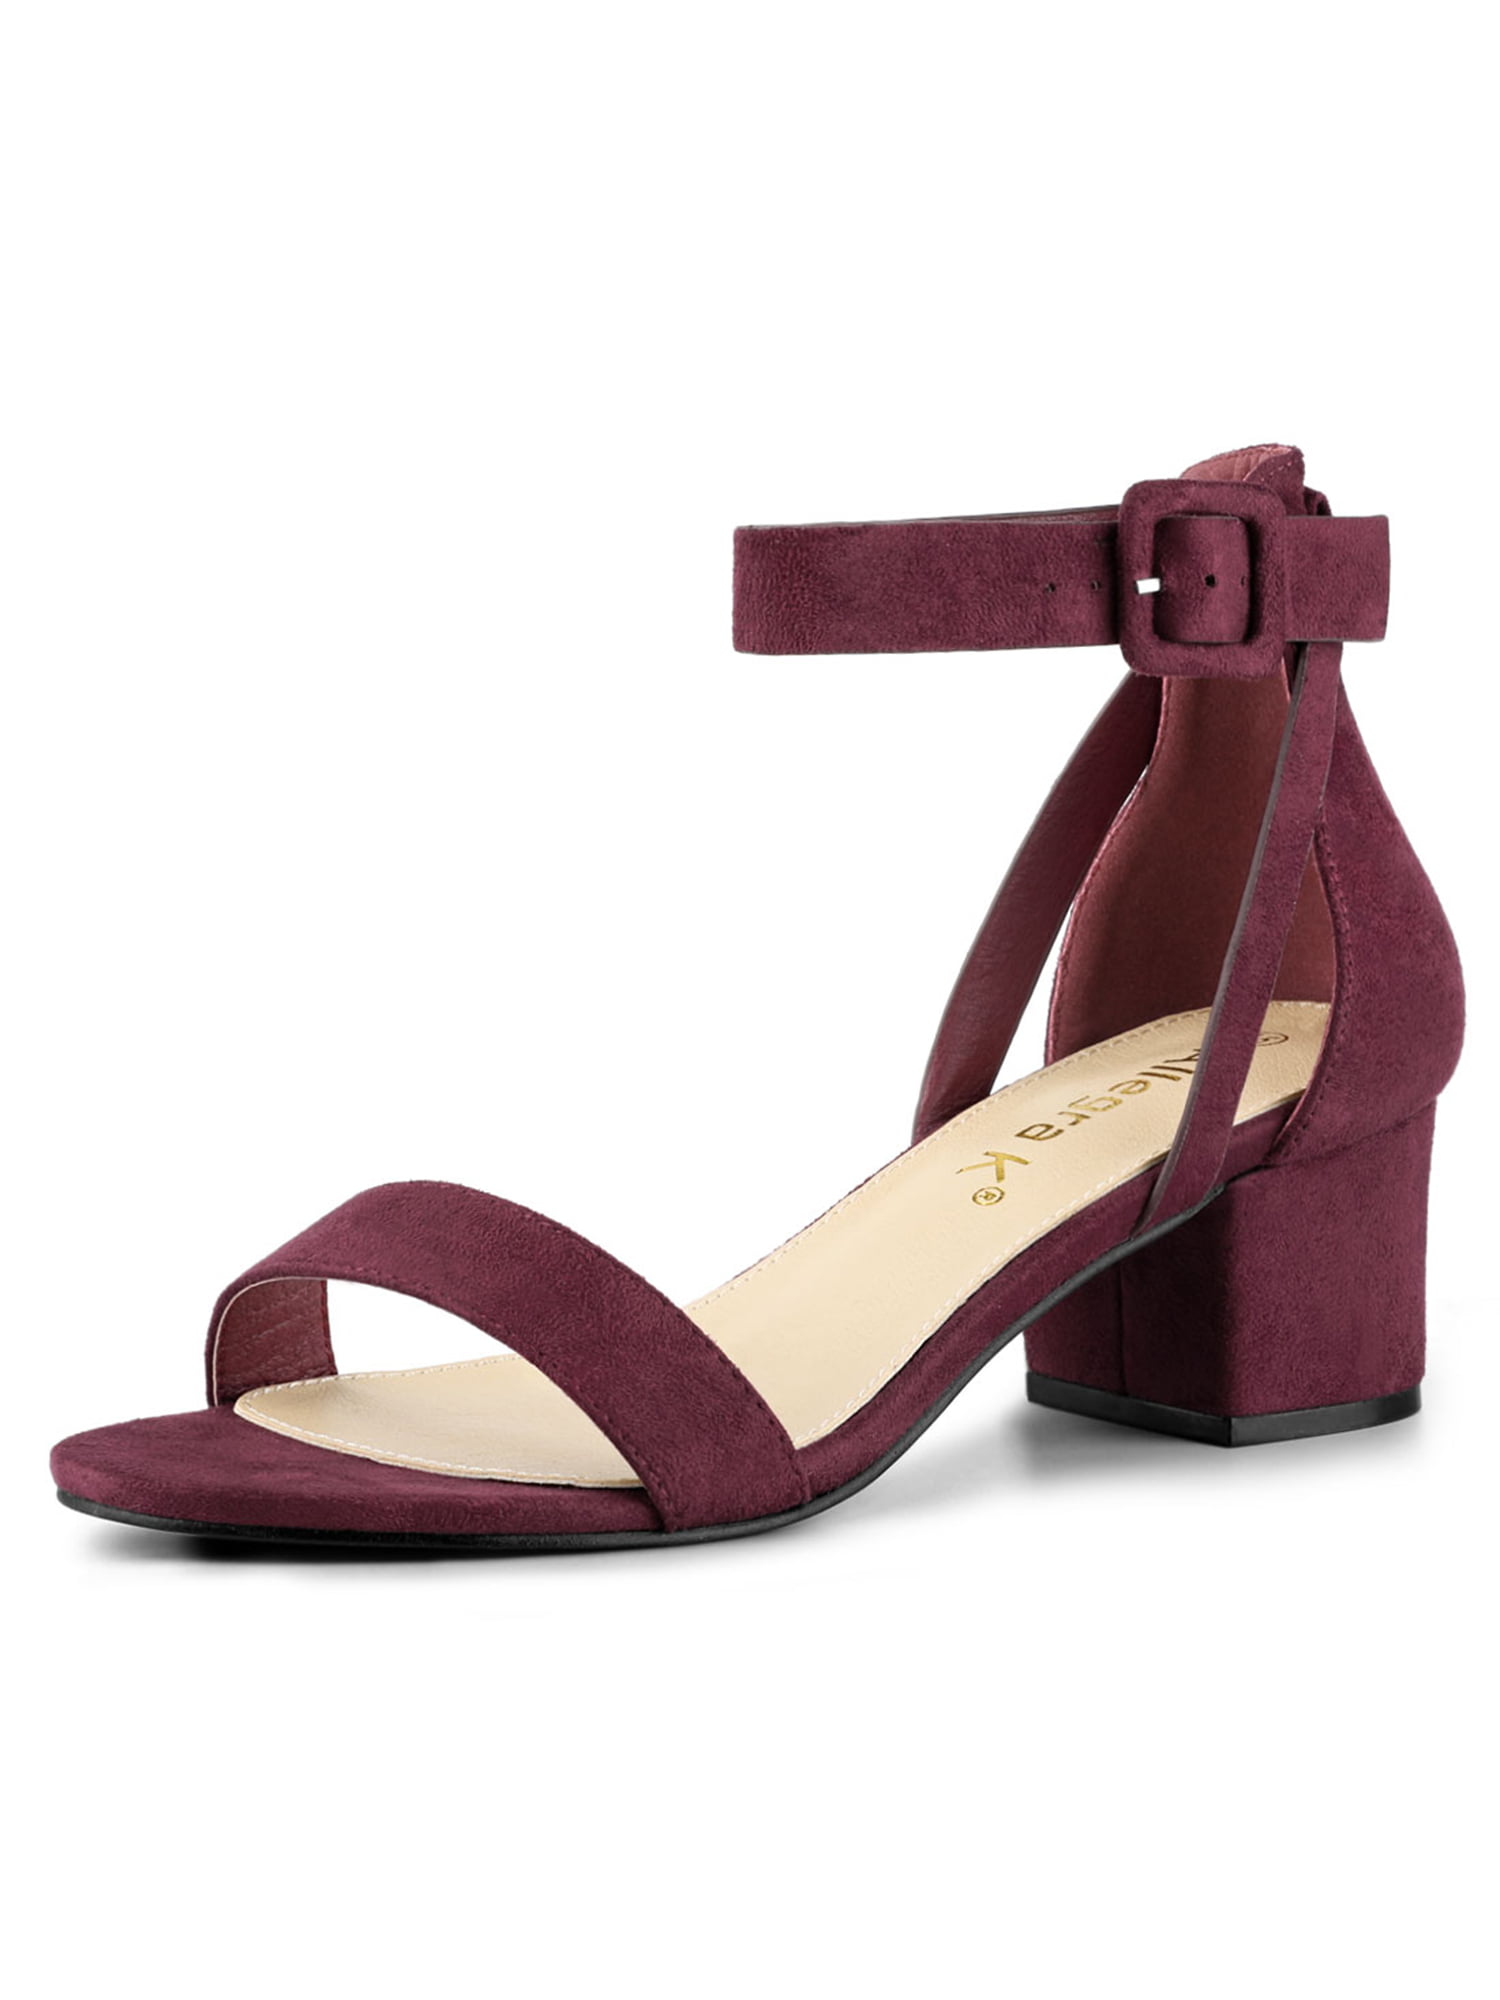 Unique Bargains - Allegra K Women's Ankle Strap Heel Sandals Shoes ...